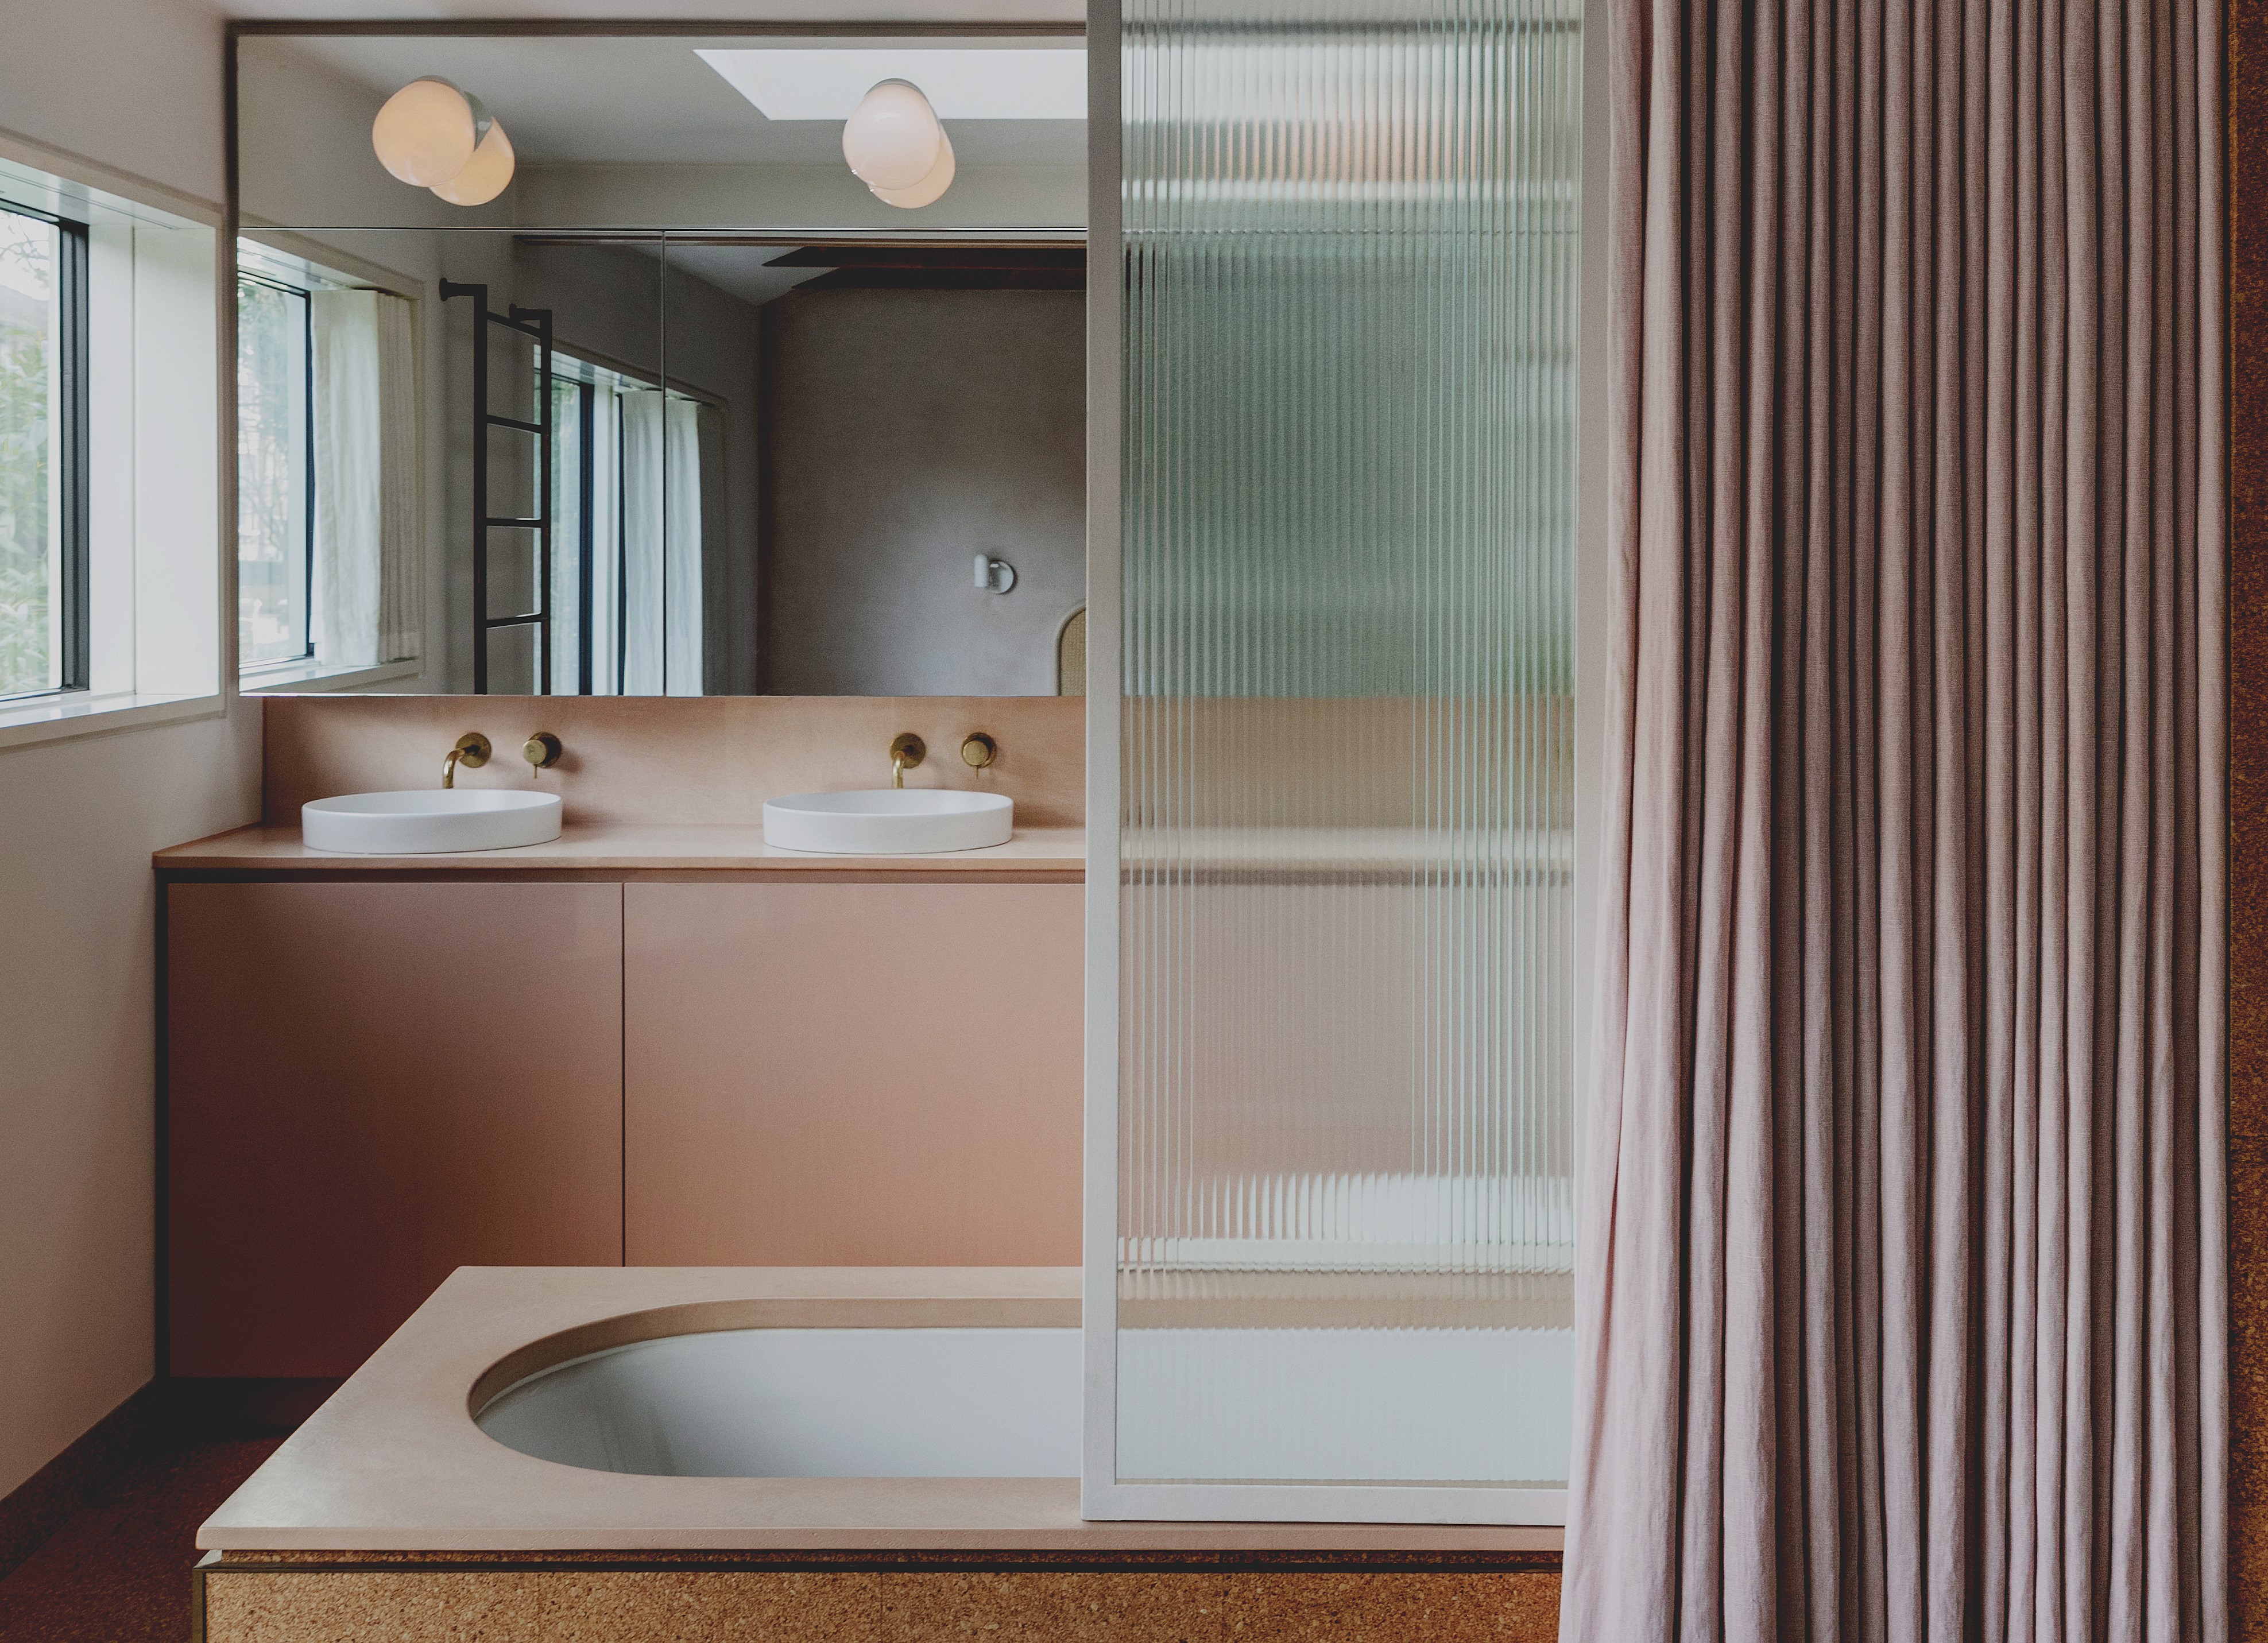 Bathroom partition ideas – 10 ways to create zones